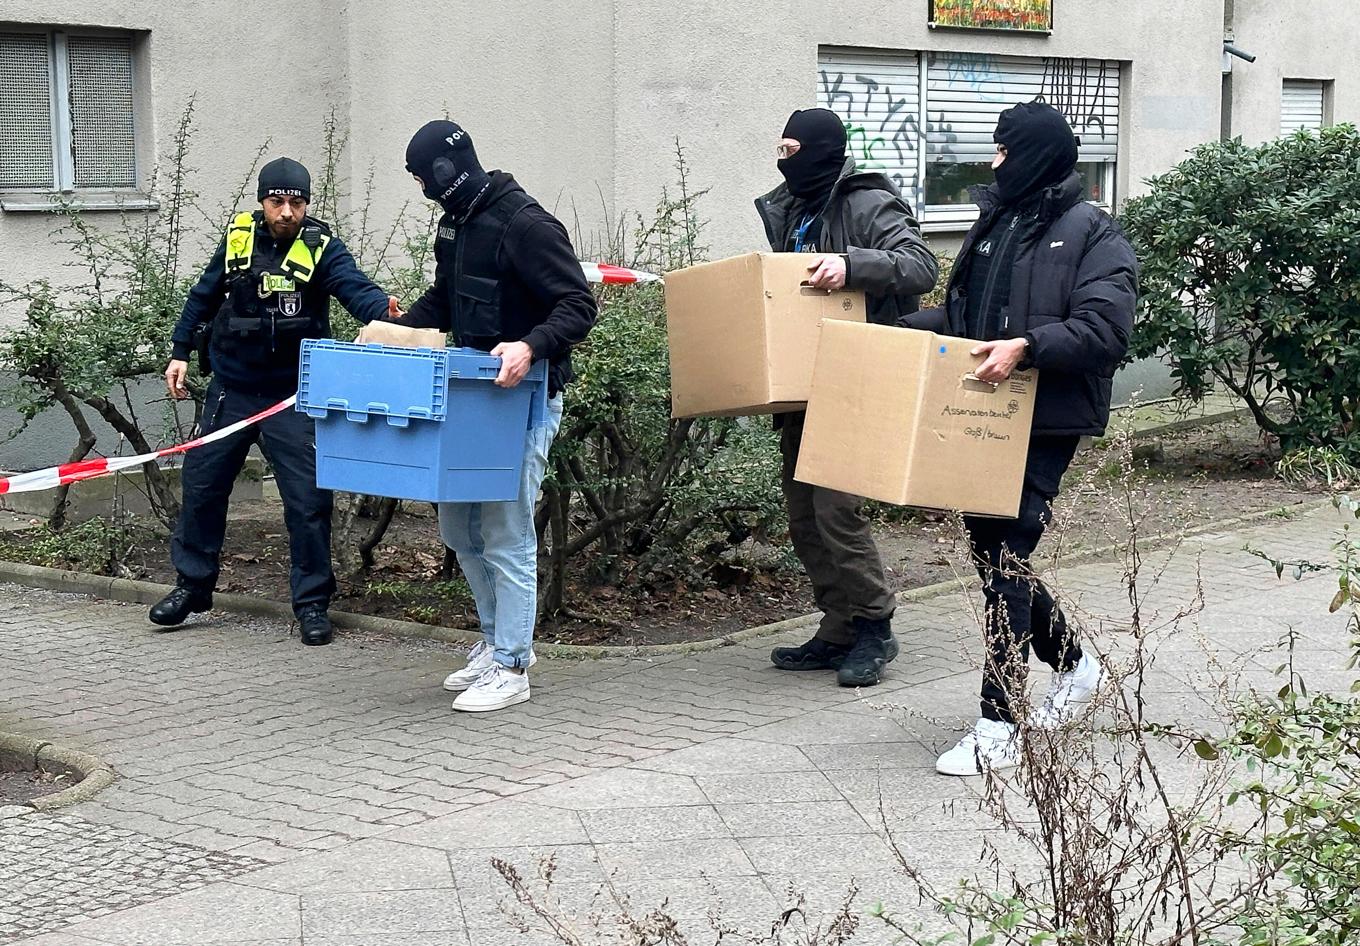 En handgranat och andra vapen hittades hemma hos Daniela Klette, medlem i den ökända Baader-Meinhof-ligan. Foto: Paul Zinken/AP/TT